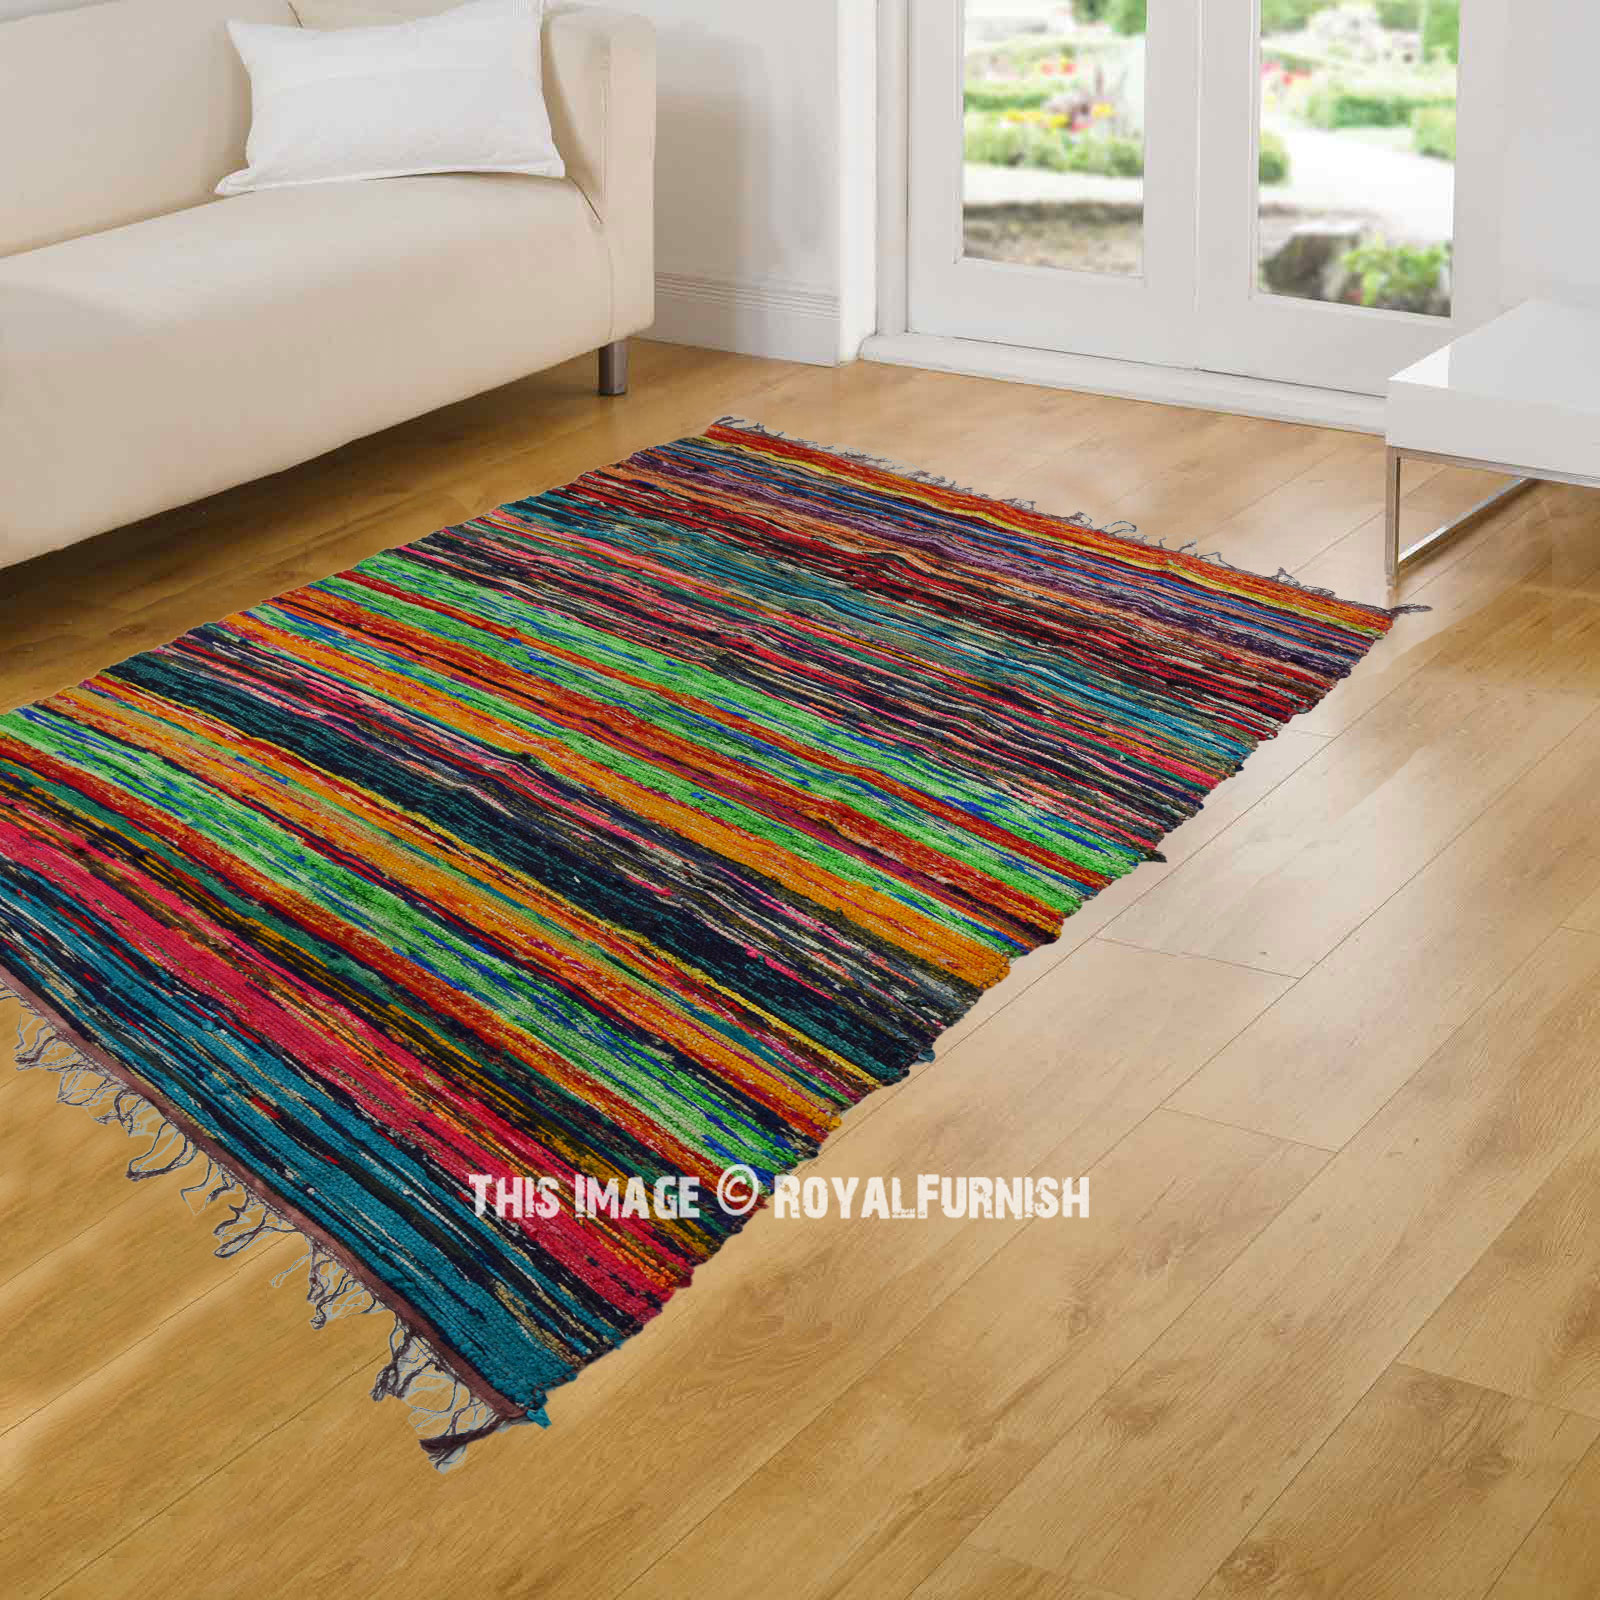 Indian Brown Multi Handmade Chindi Rug Floor Yoga Mat Area Rug Mat Carpet 3x5 Ft 